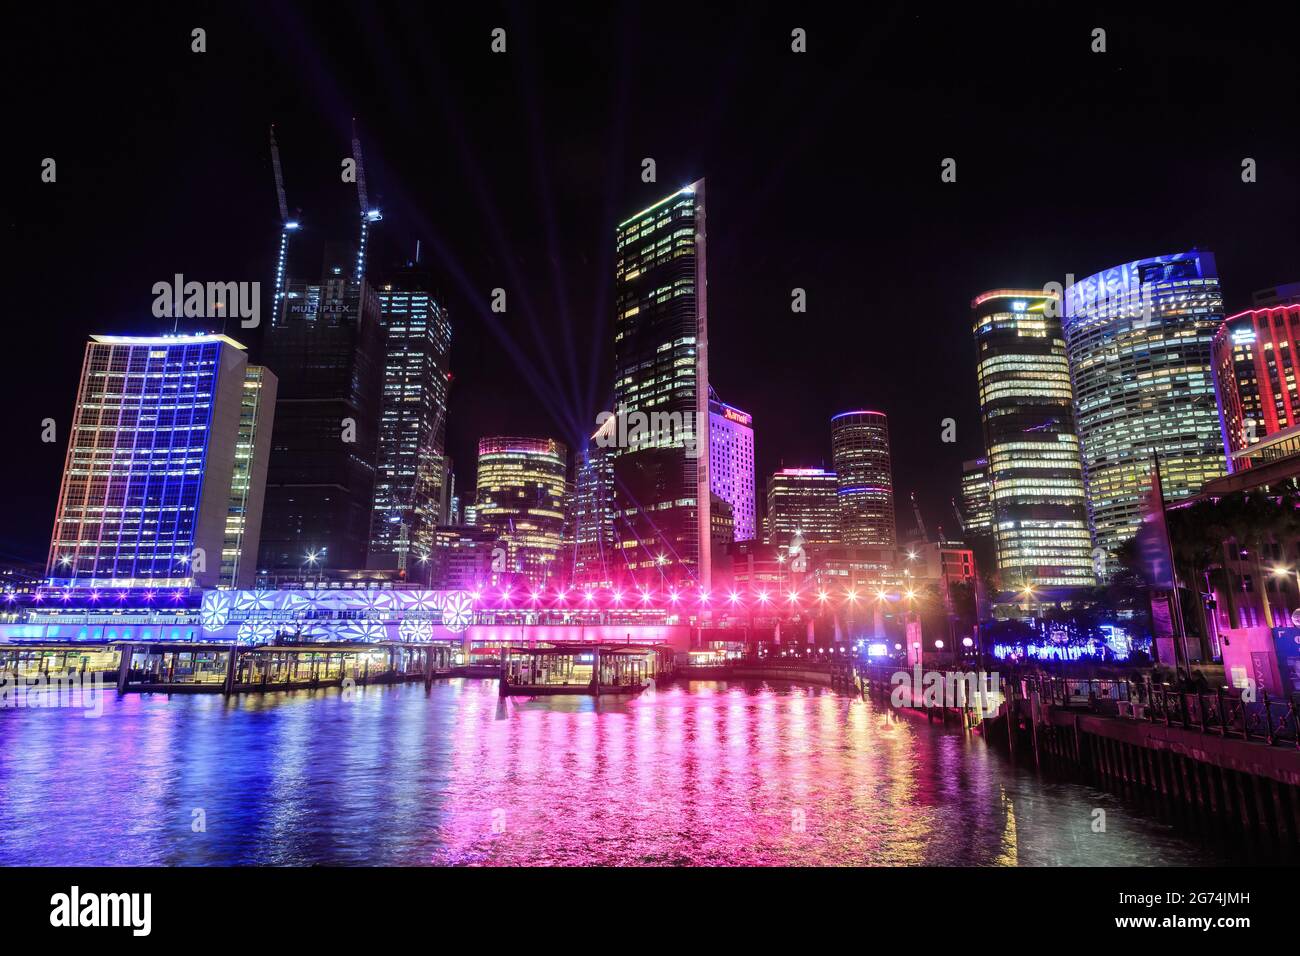 Lo skyline di Sydney, Australia, splendidamente illuminato durante gli spettacoli di luci annuali del festival Vivid Sydney Foto Stock